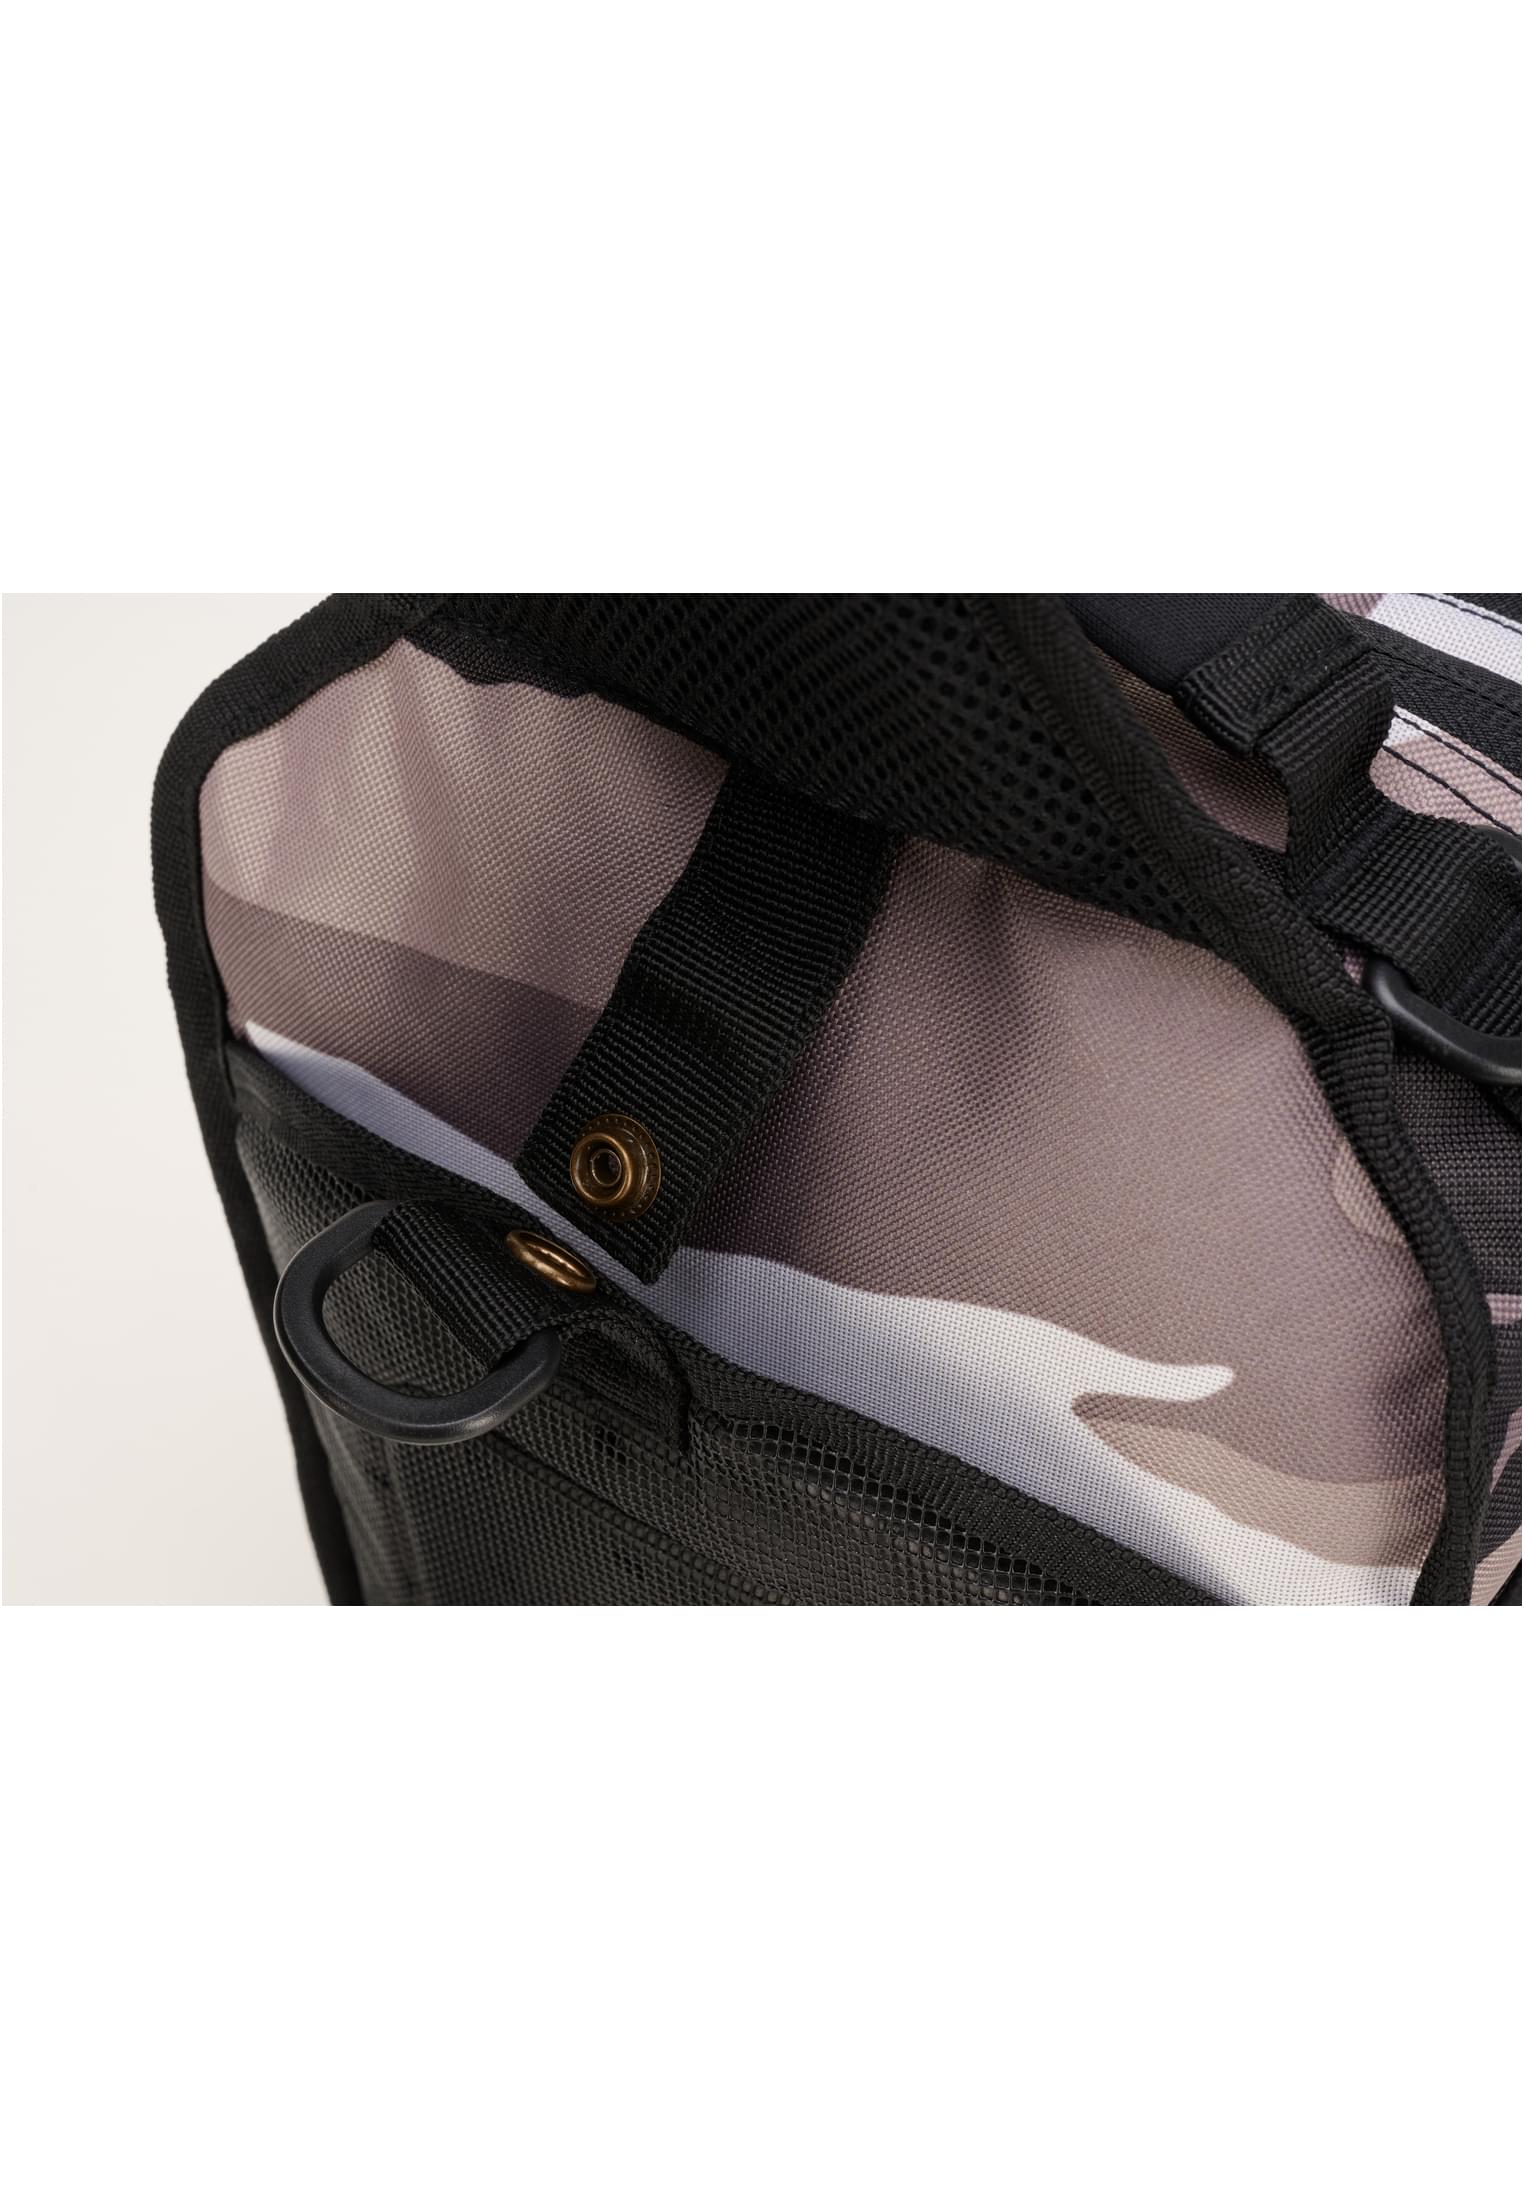 Taschen US Cooper Shoulder Bag in Farbe urban